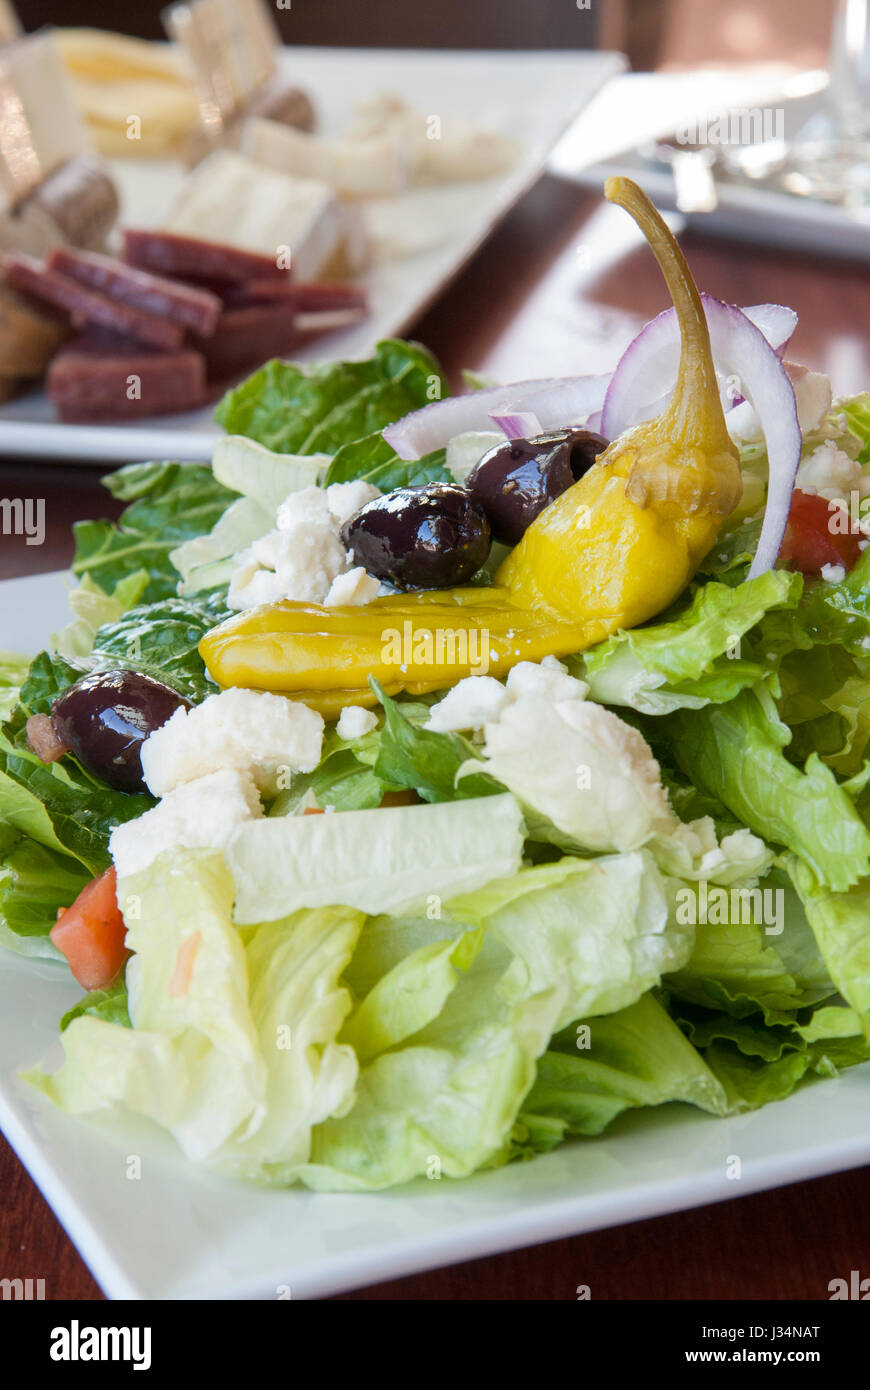 Ein frischer griechischen Salat mit Kalamata-Oliven, Feta-Käse und Peperoncino macht eine lite und gesunde Mittagessen, begleitet von einer Wurst Platte Stockfoto